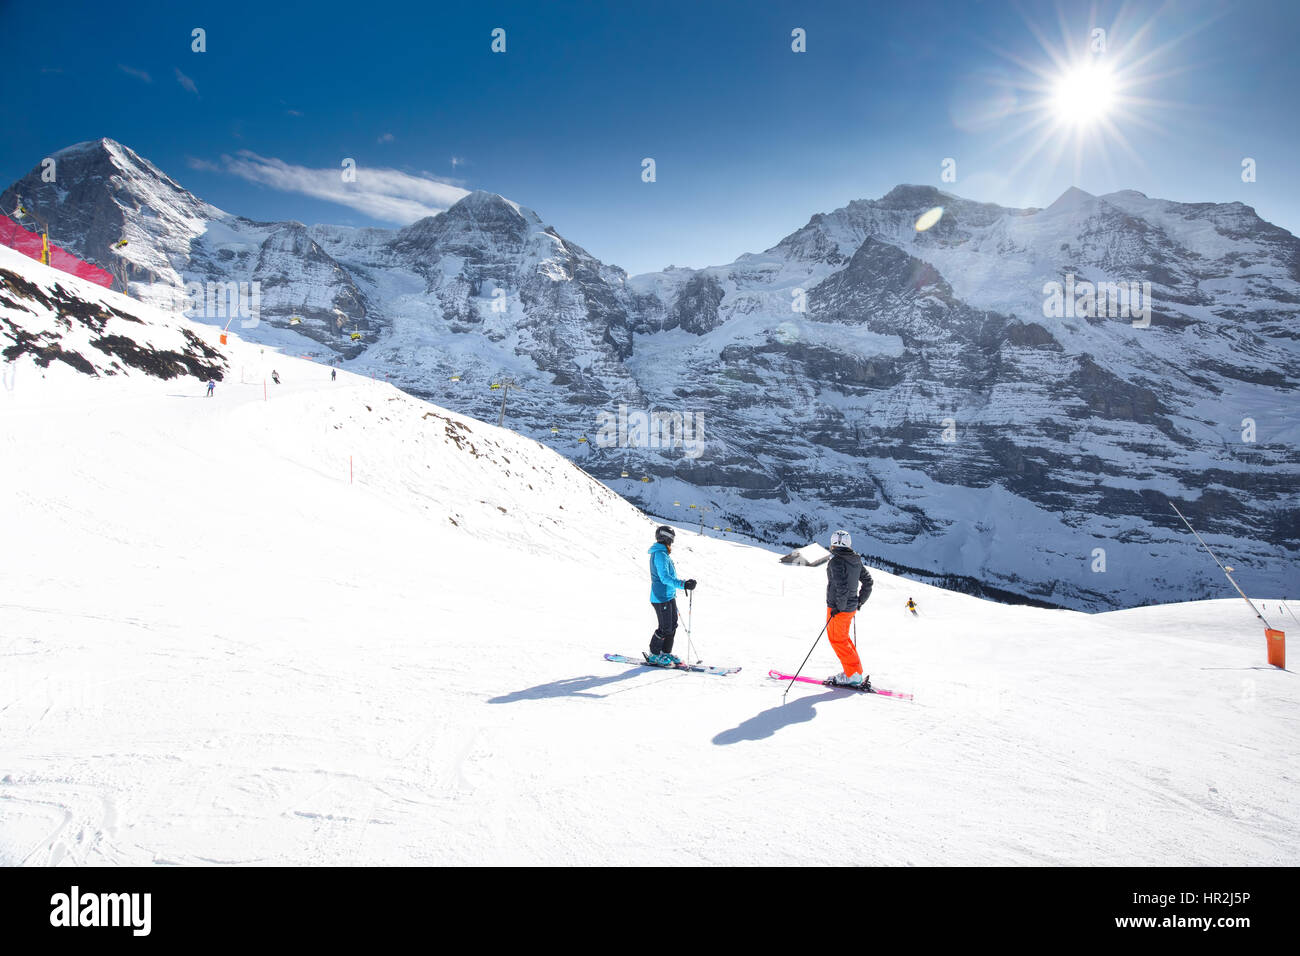 Jungfrau stazione sciistica svizzera con Eiger, Monch e Jungfrau picchi, Grindelwald, Svizzera Foto Stock